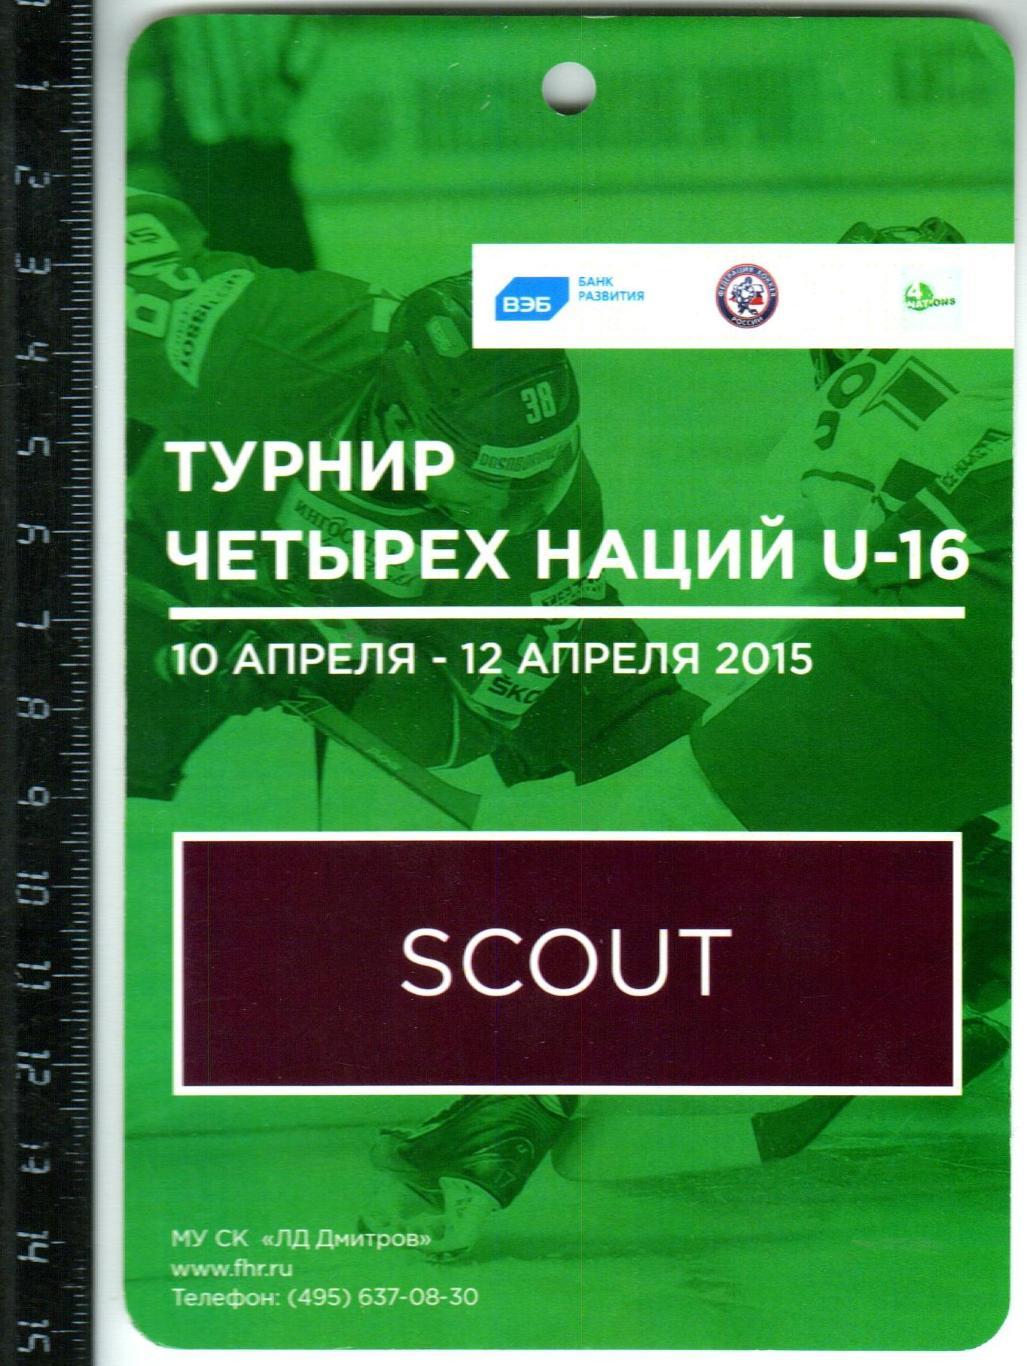 Турнир четырех наций U-16 Россия Чехия Швеция Финляндия 2015 Дмитров Скаут/Scout